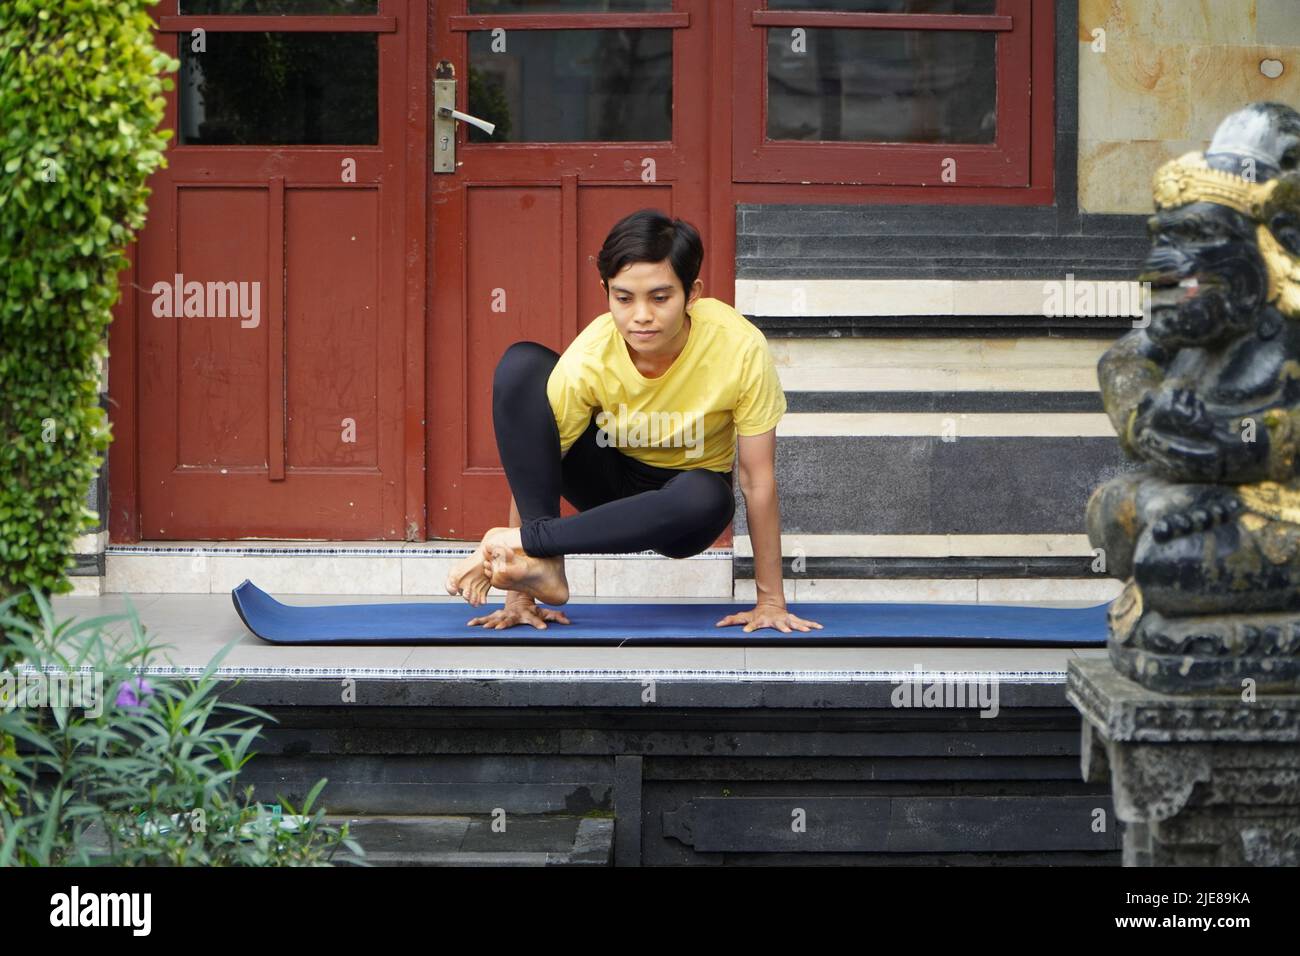 Auf seiner Terrasse übt ein junges asiatisches Mädchen mit einem atemberaubenden Aussehen Yoga, während es einen kurzen Haarschnitt, ein gelbes Hemd und schwarze Leggings trägt. S Stockfoto